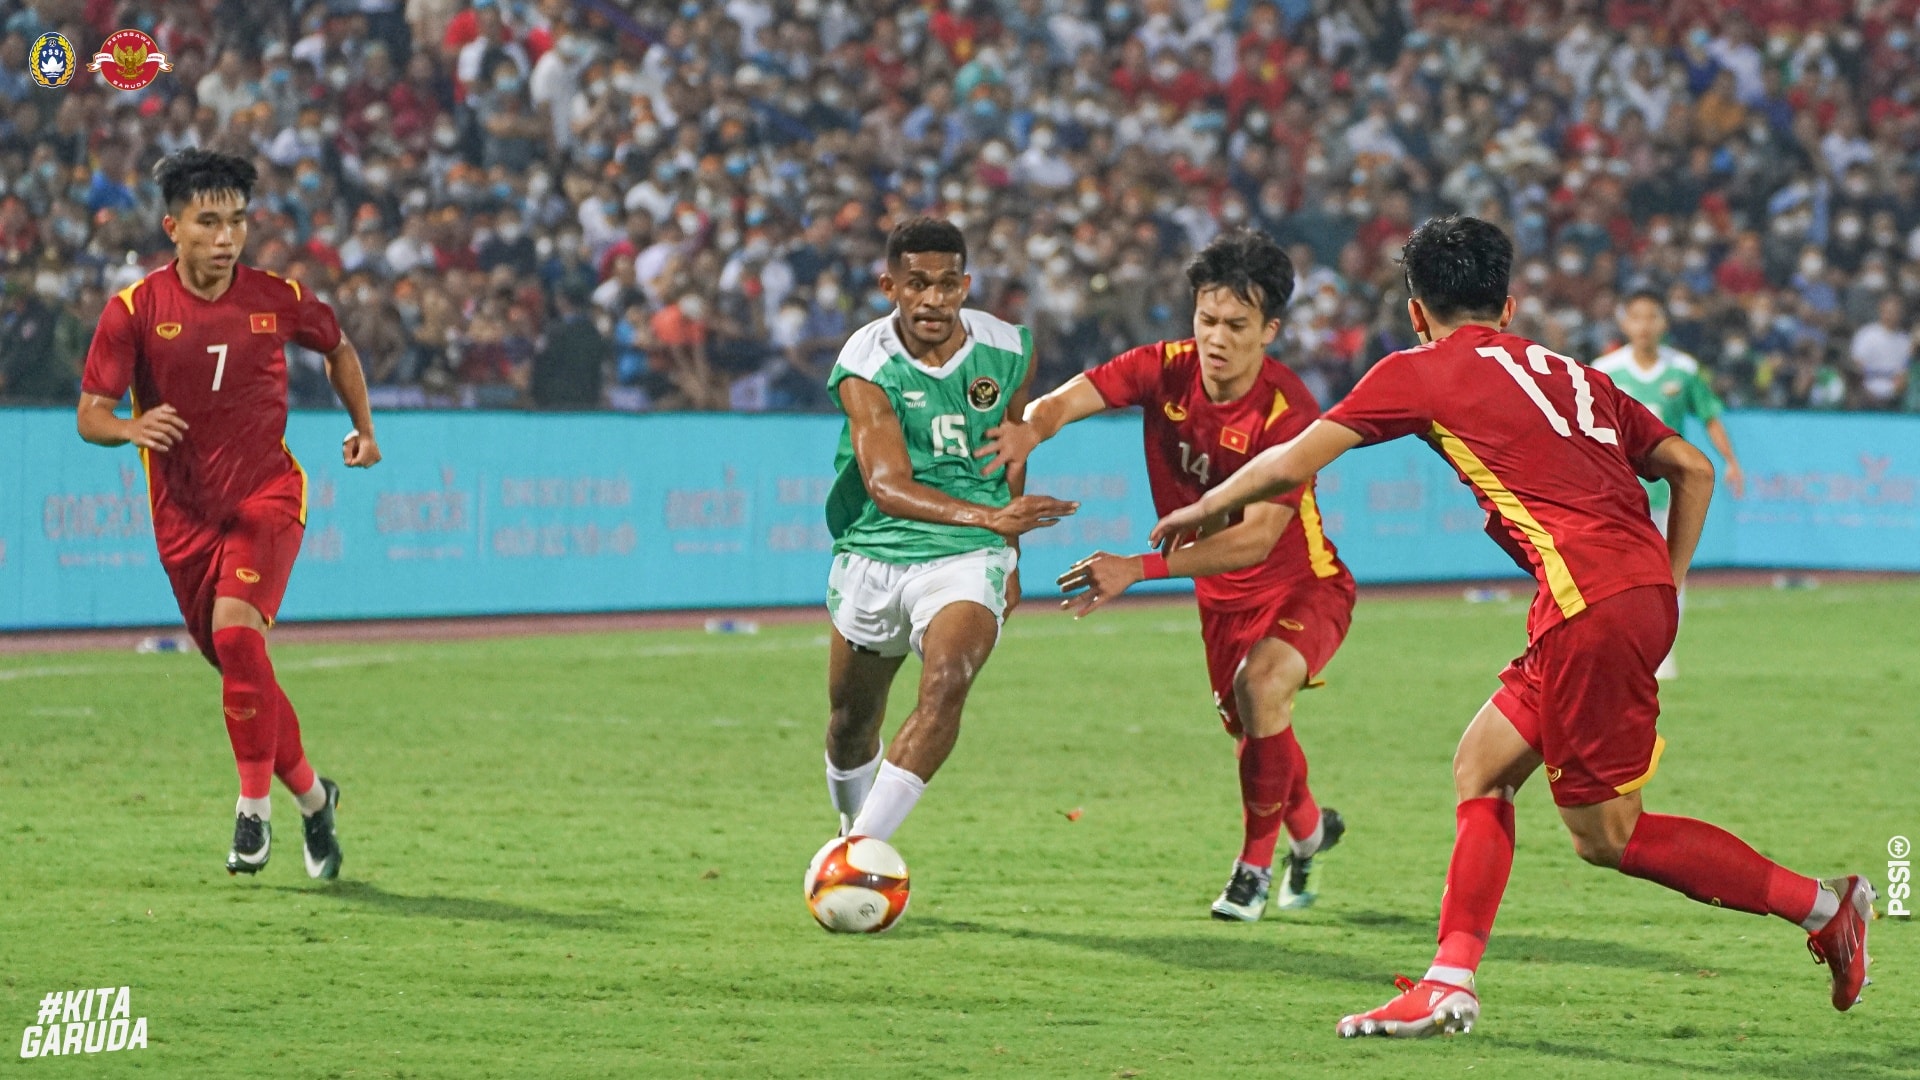 Penampilan lini belakang Timnas Indonesia U-23 pascakekalahan telak 0-3 kontra Vietnam di partai perdana SEA Games 2021 menuai sorotan. Pelatih Shin Tae-yong meminta dua pilar utama yang belum bergabung dapat segera hadir di partai berikutnya.